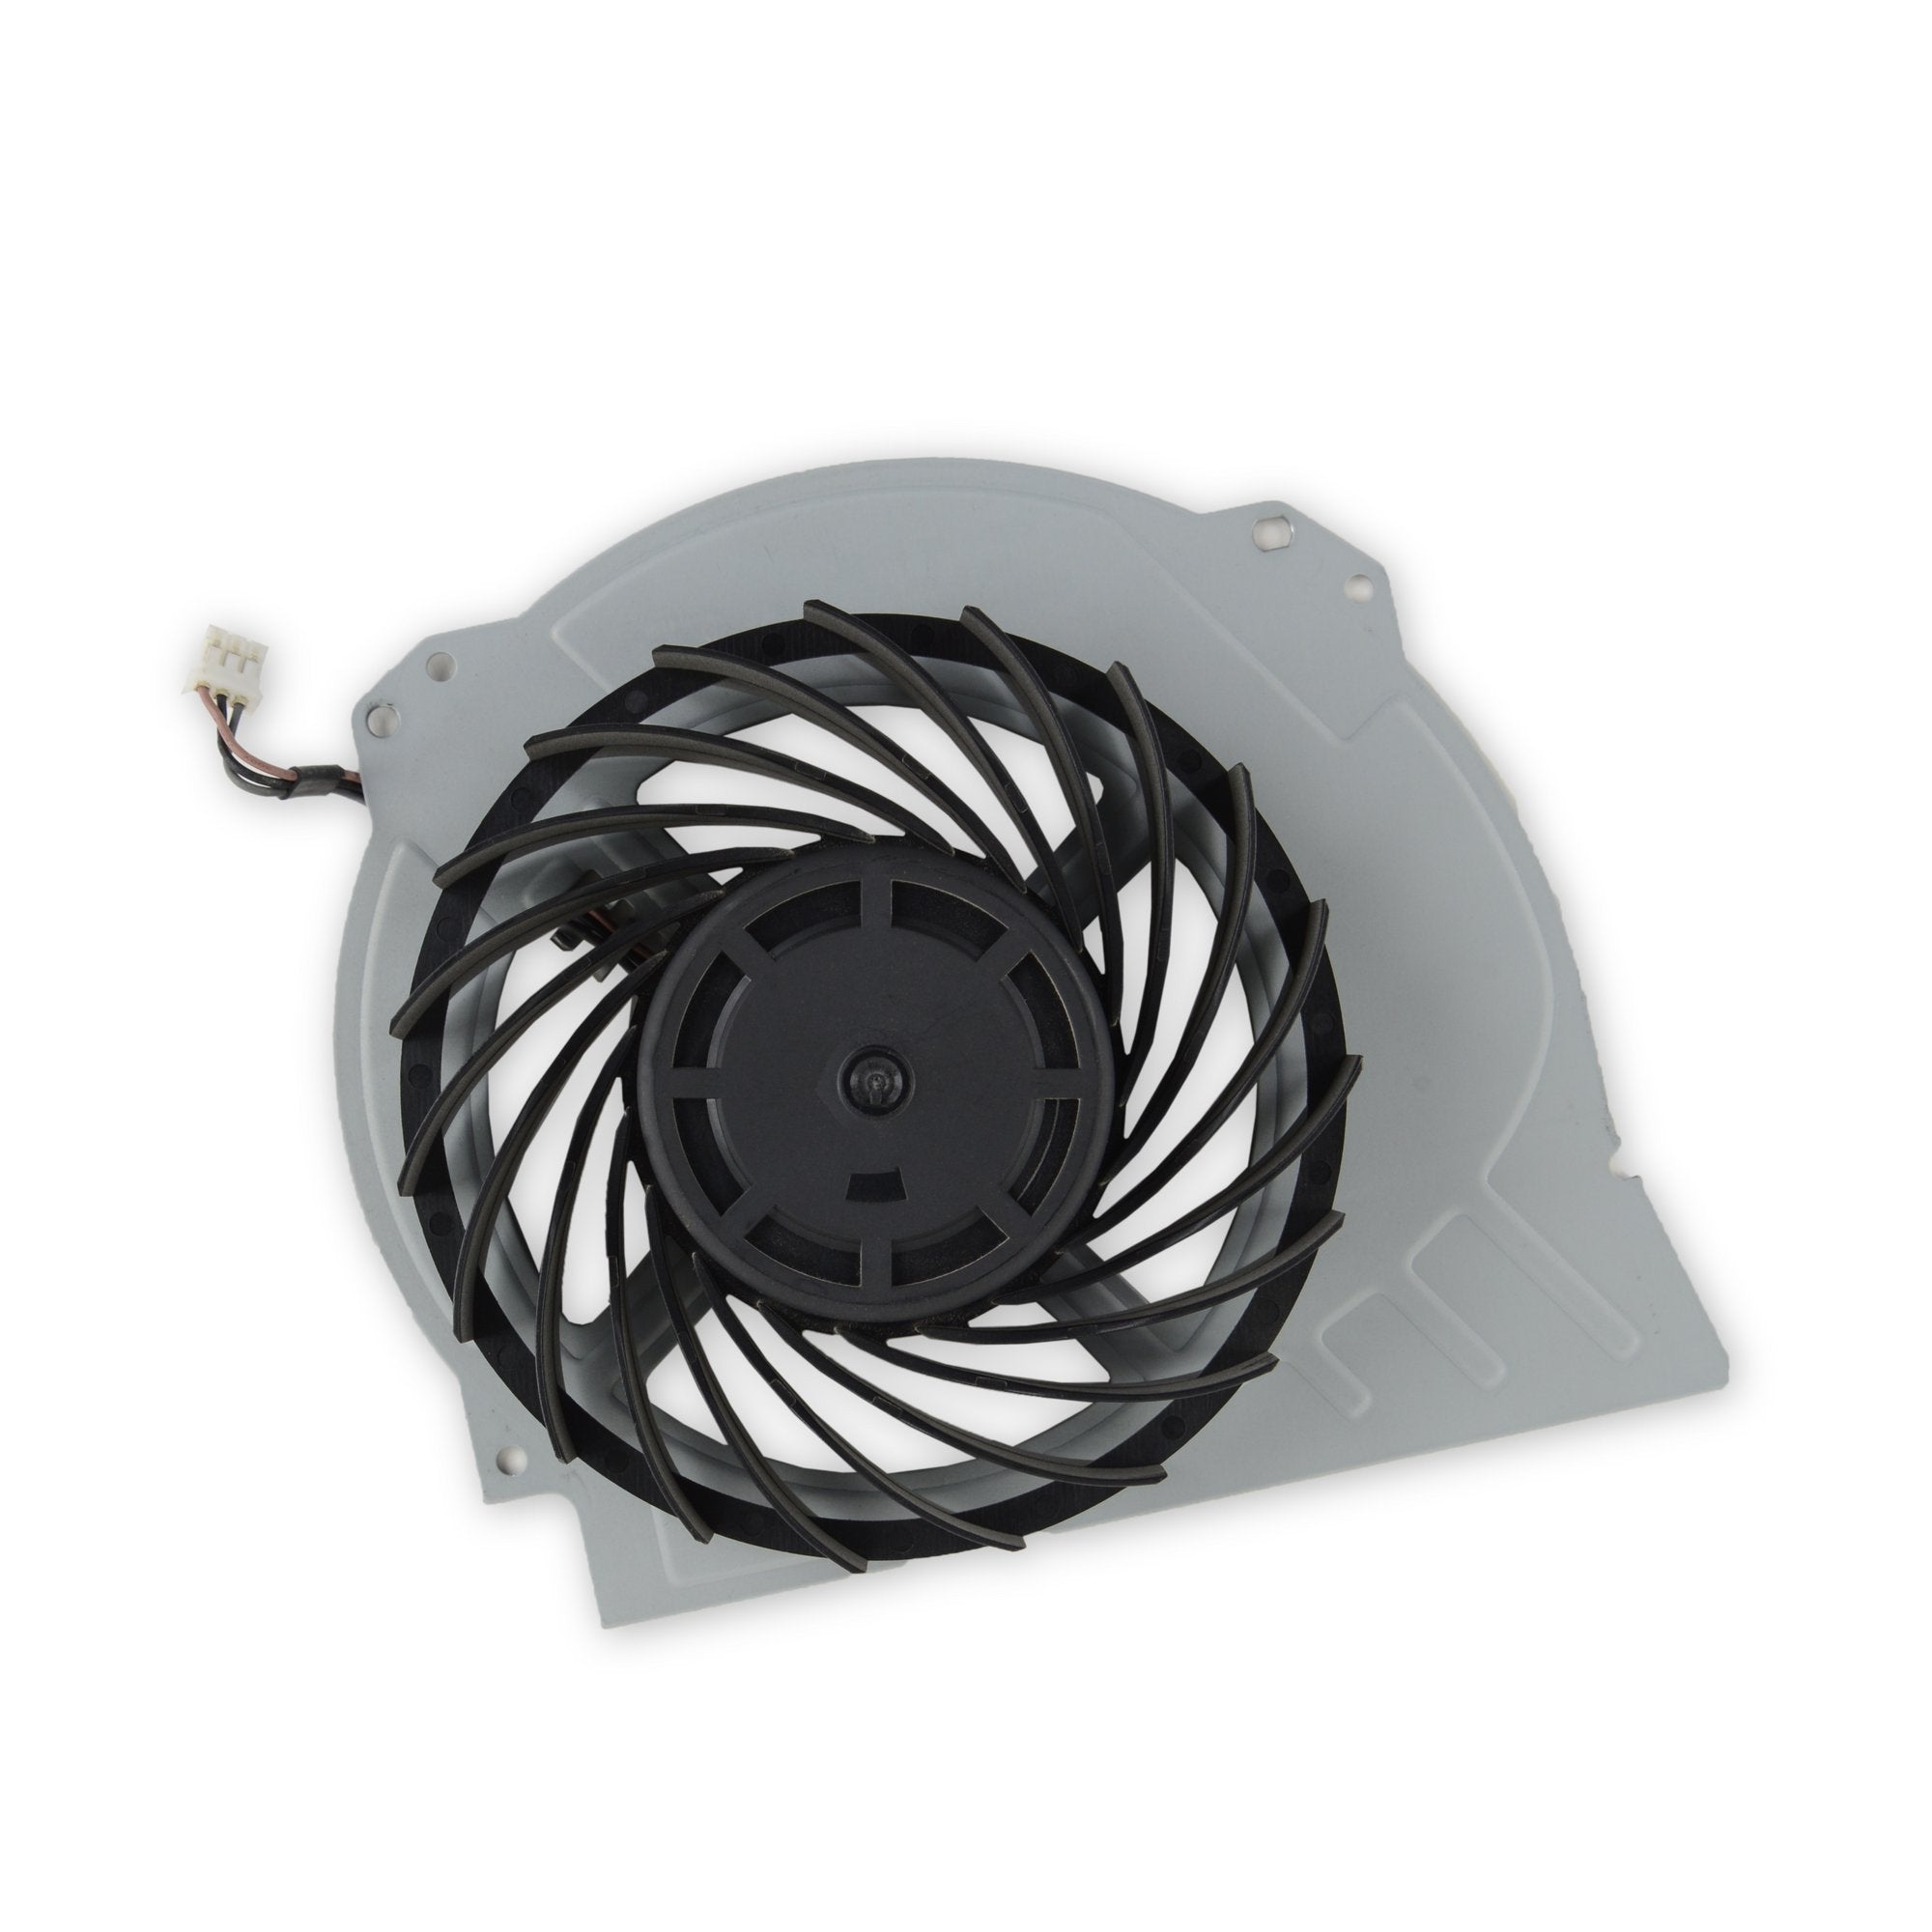 Réparation surchauffe ventilateur PS4 Paris